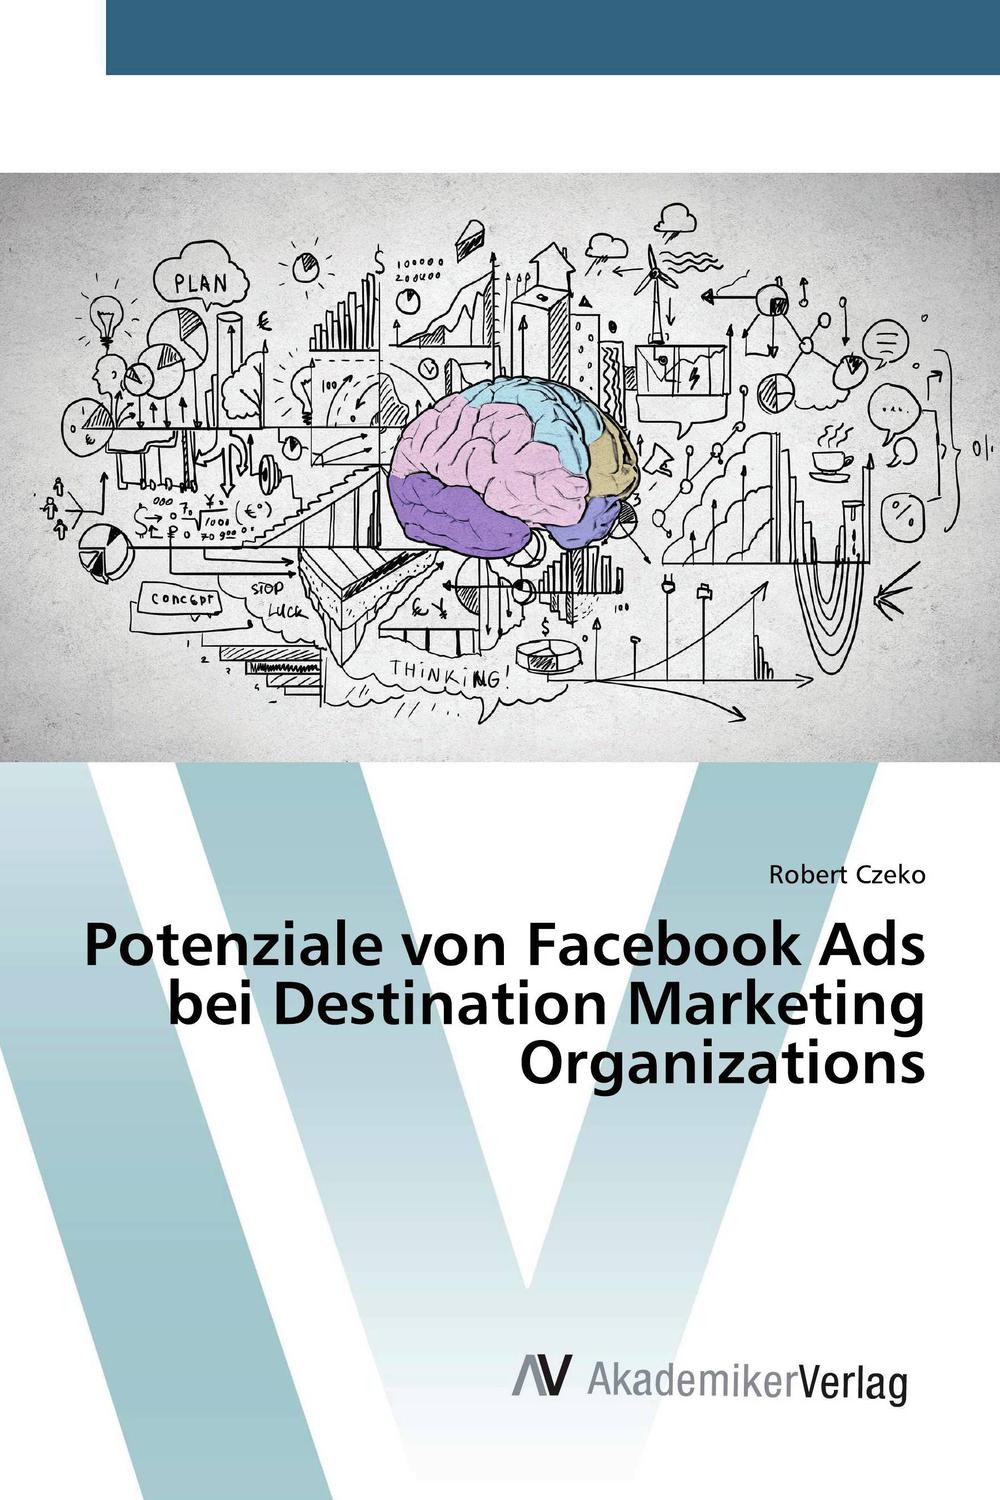 Potenziale von Facebook Ads bei Destination Marketing Organizations - Robert Czeko